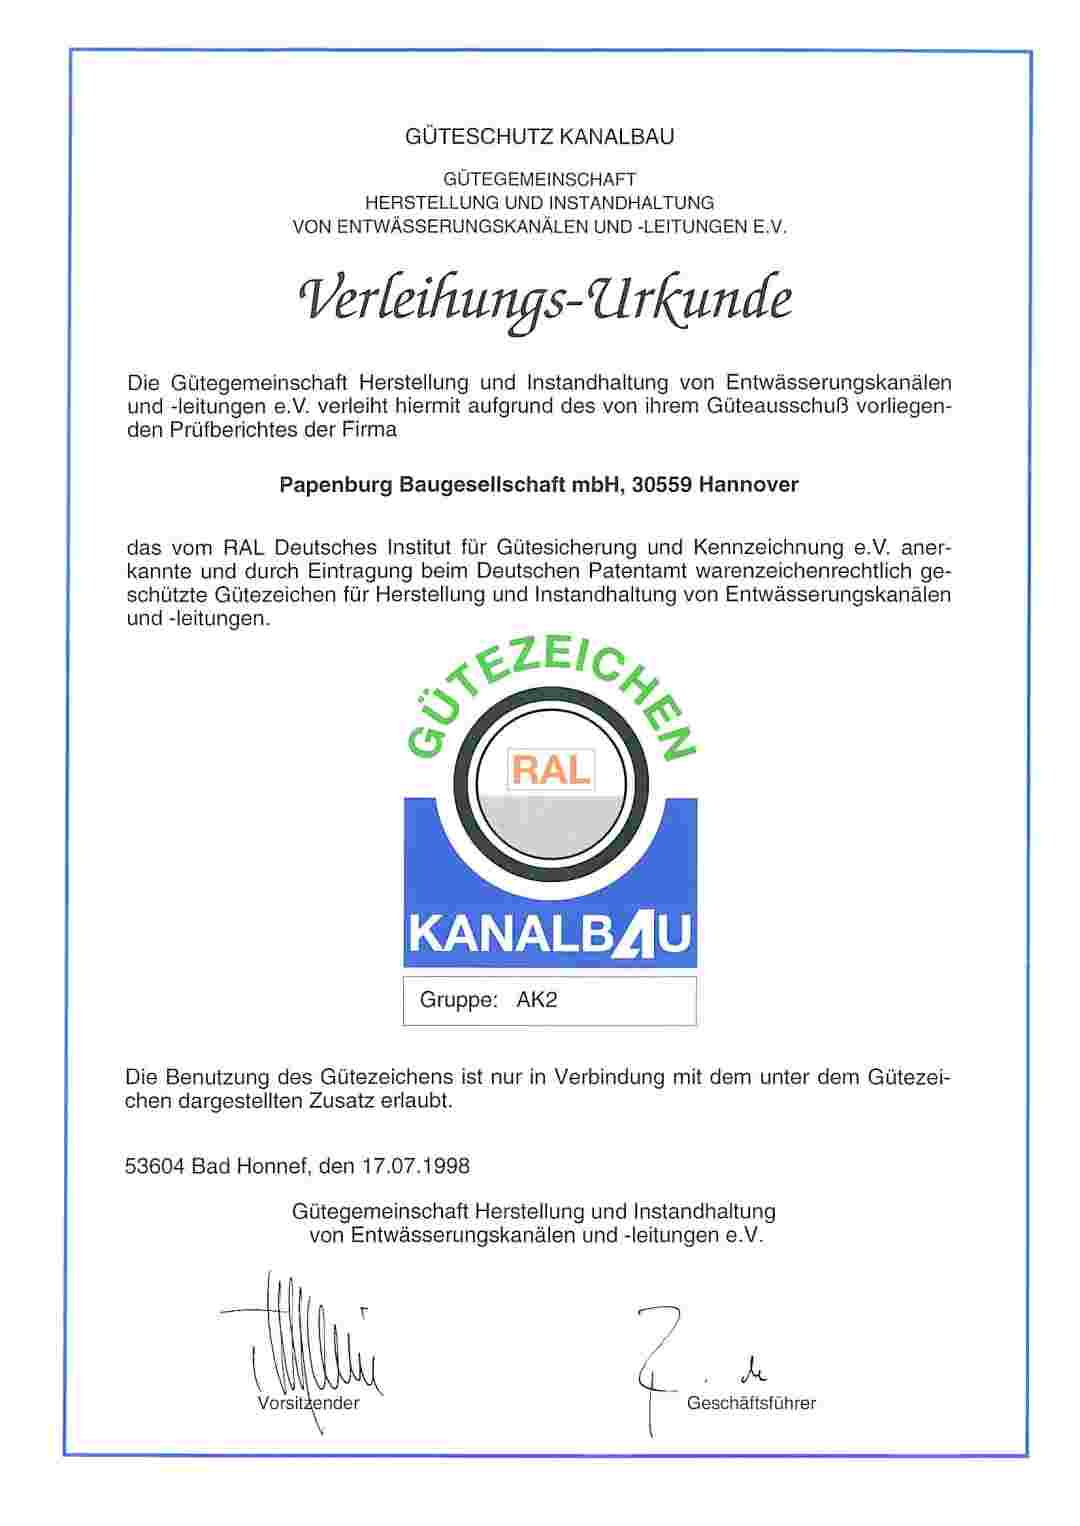 Präqualifikation Die GP Papenburg Baugesellschaft mbH ist AK2 zertifiziert gem. des Güteschutz Kanalbaus.